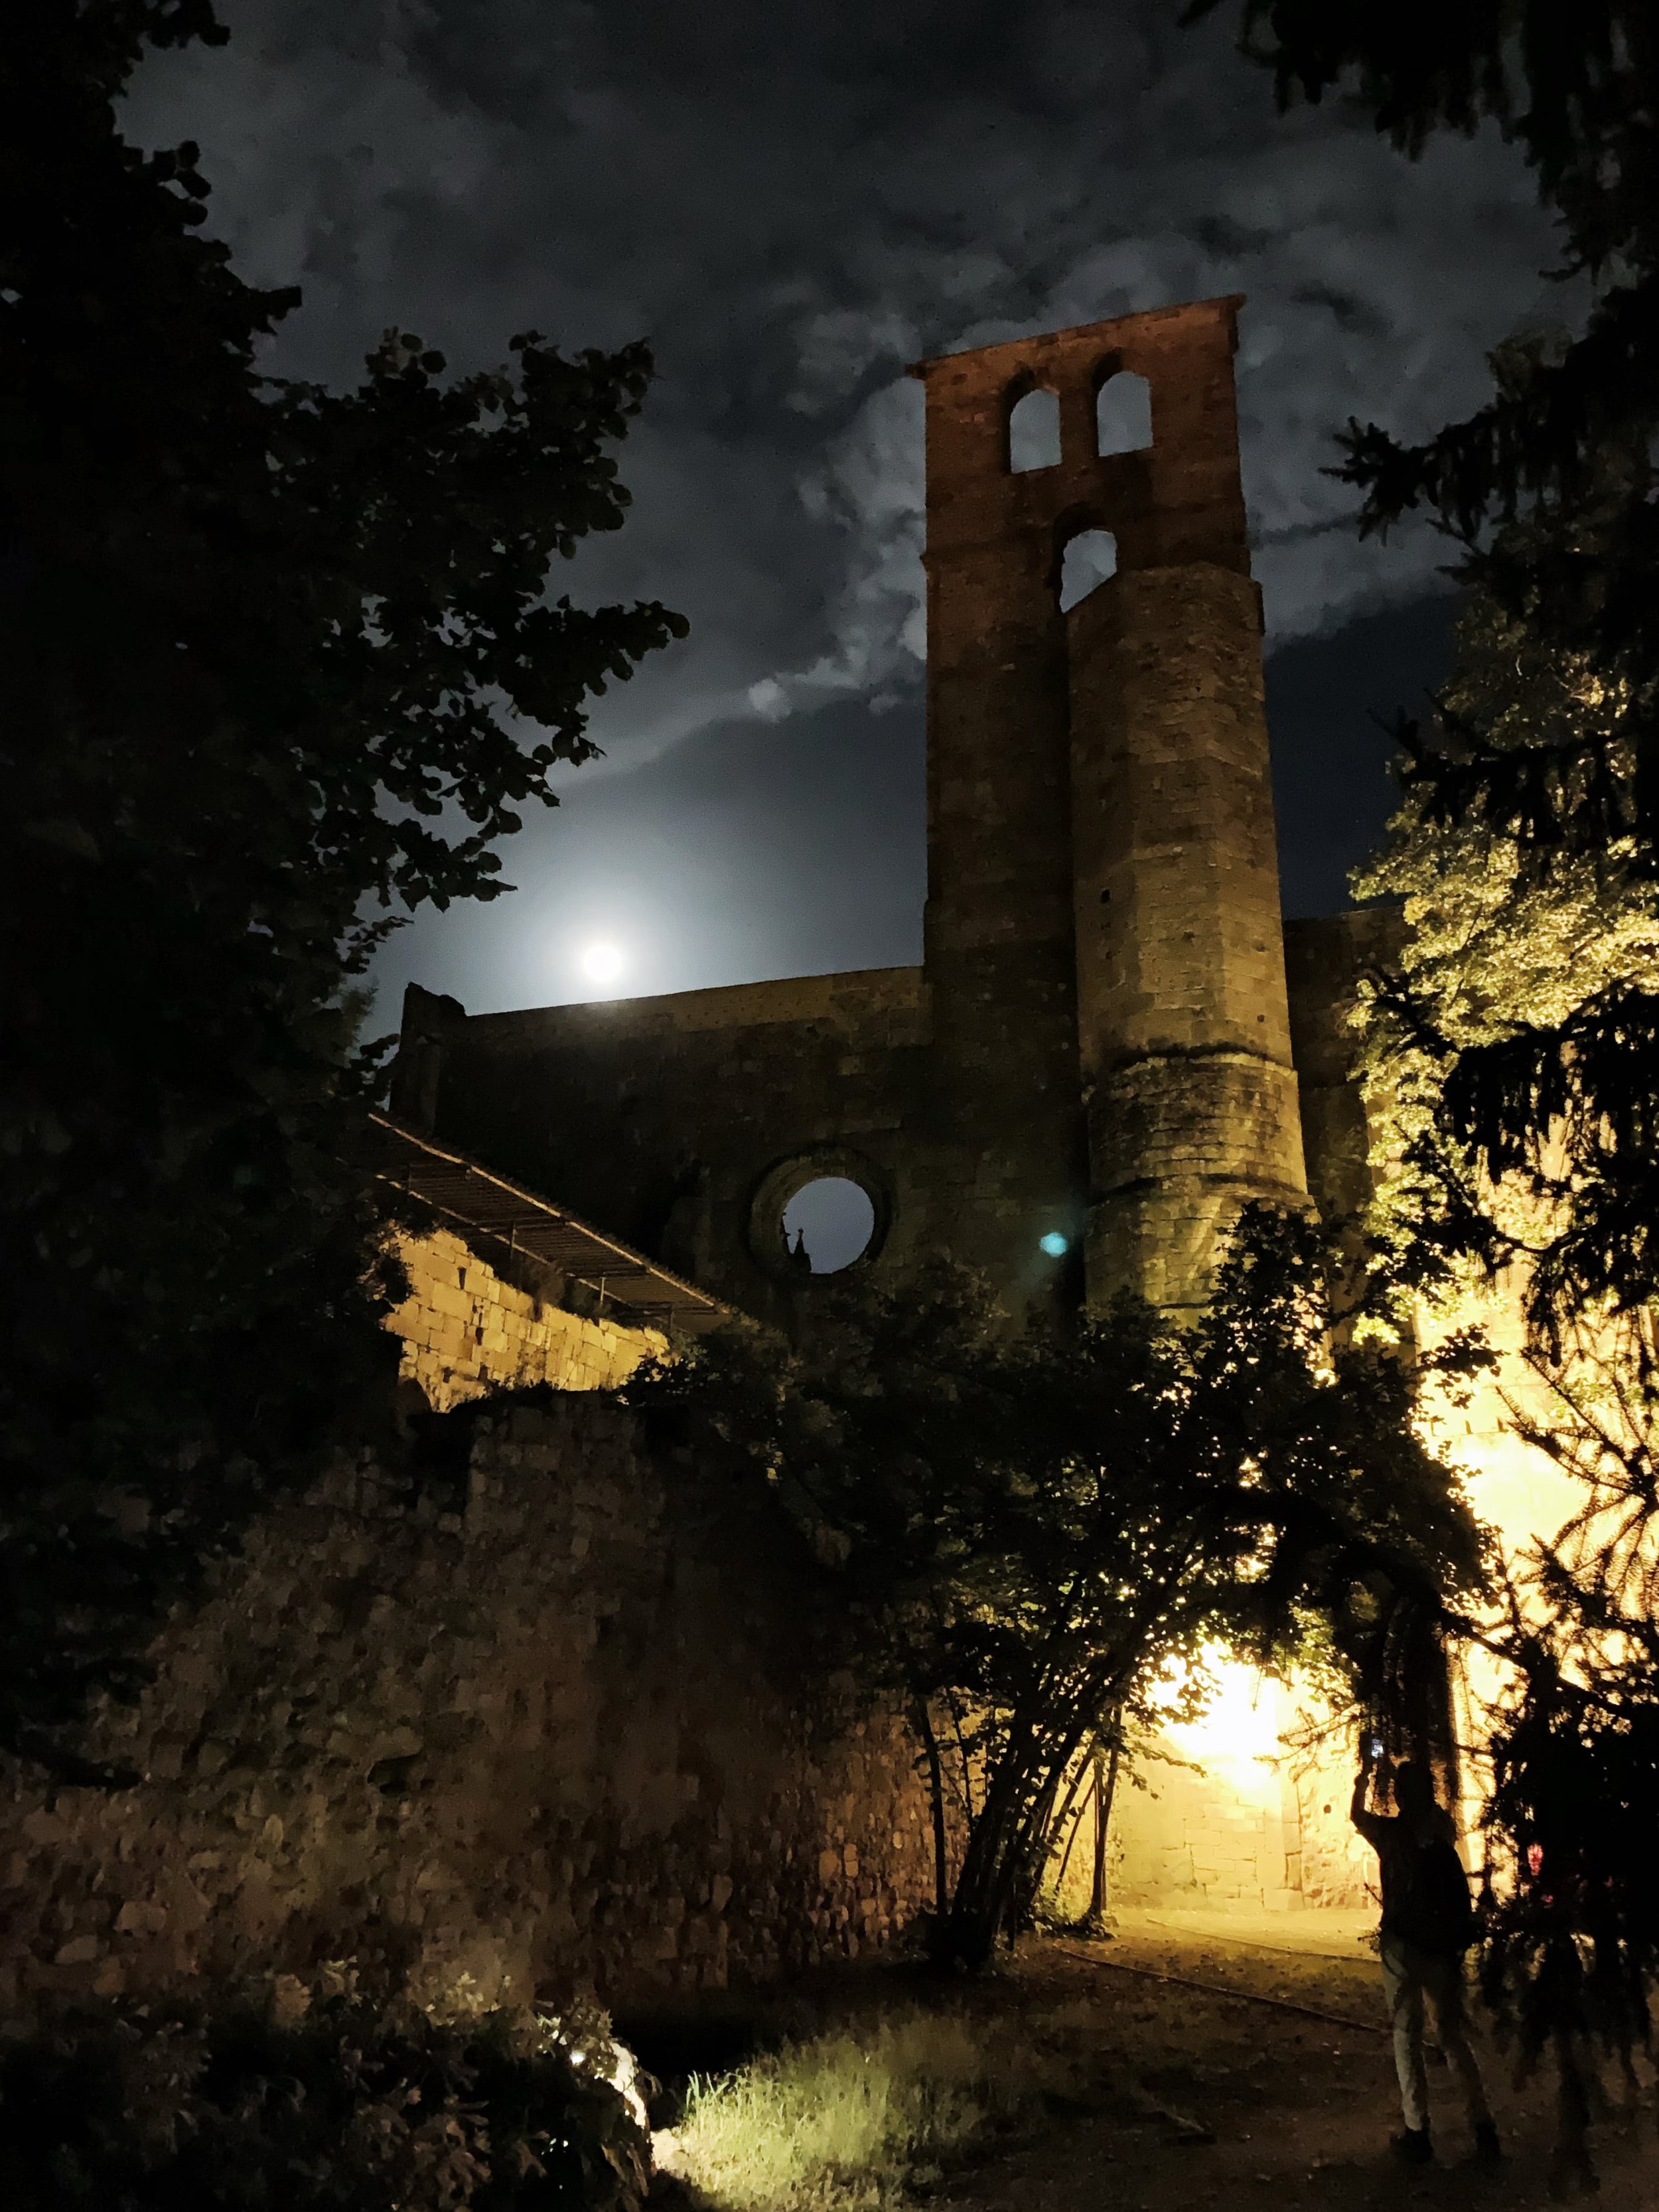 Alet-les-Bains, France - Cathedral Ruins at Night-min.JPG